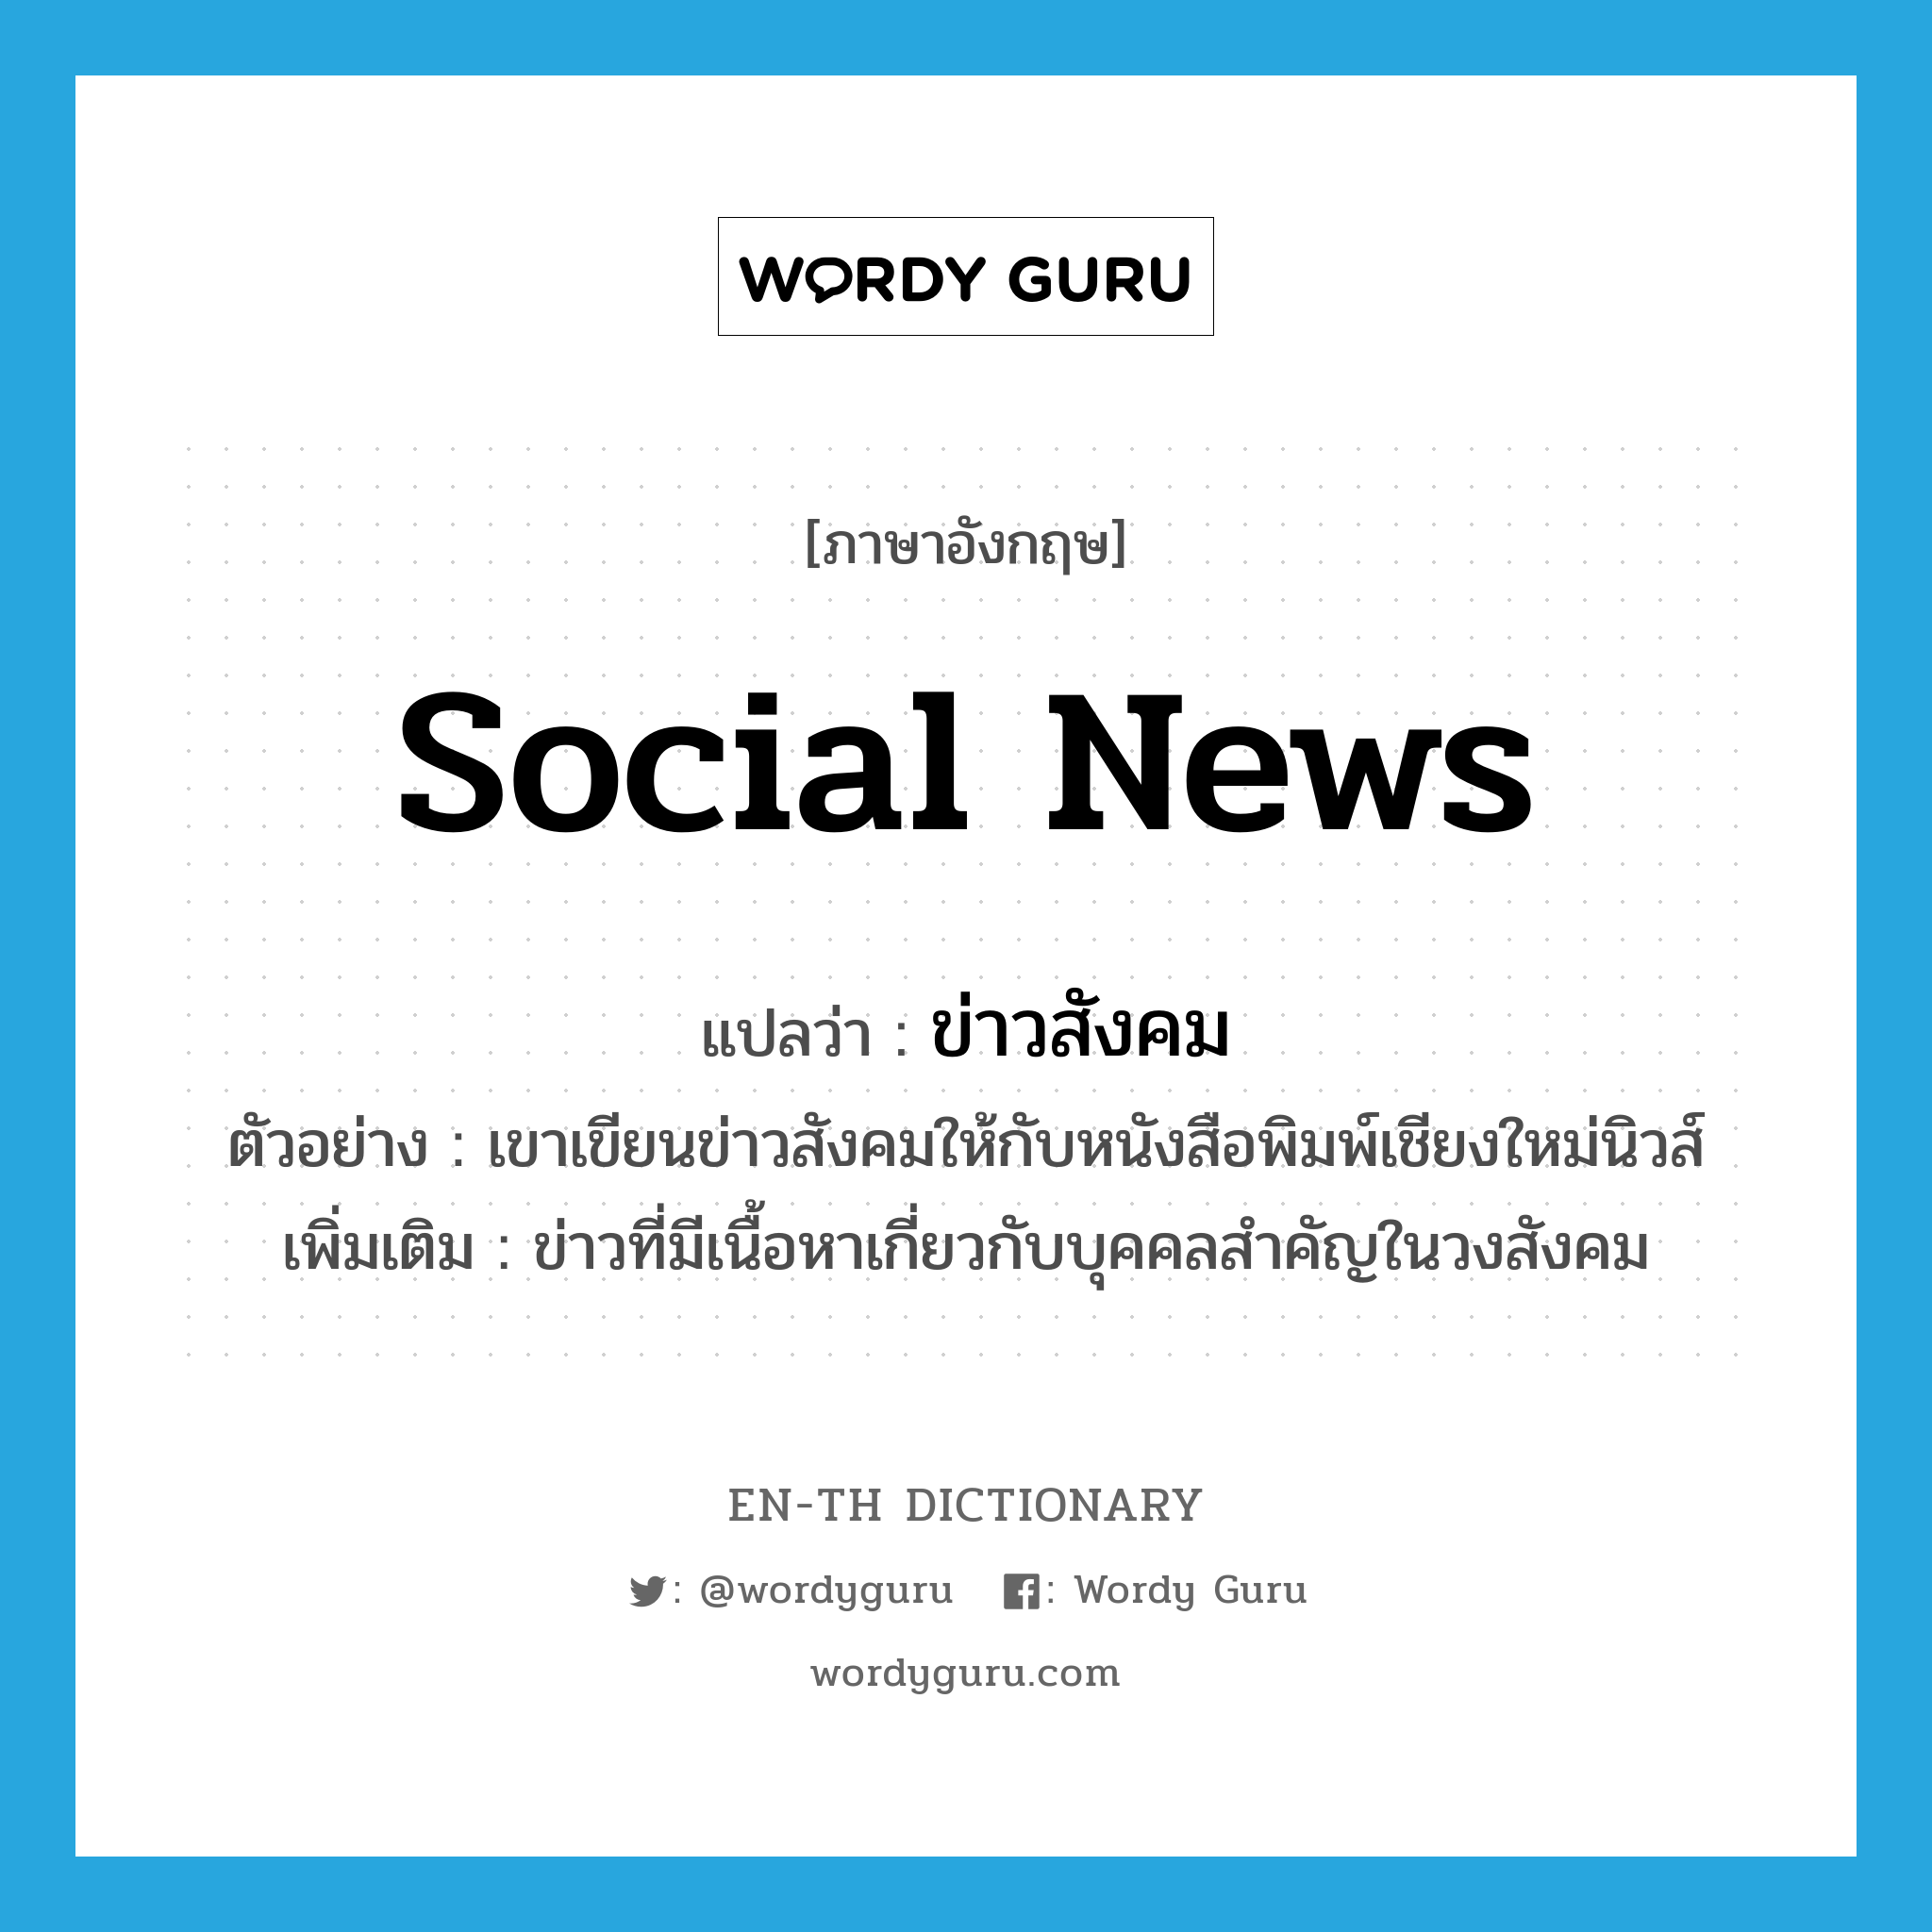 ข่าวสังคม ภาษาอังกฤษ?, คำศัพท์ภาษาอังกฤษ ข่าวสังคม แปลว่า social news ประเภท N ตัวอย่าง เขาเขียนข่าวสังคมให้กับหนังสือพิมพ์เชียงใหม่นิวส์ เพิ่มเติม ข่าวที่มีเนื้อหาเกี่ยวกับบุคคลสำคัญในวงสังคม หมวด N